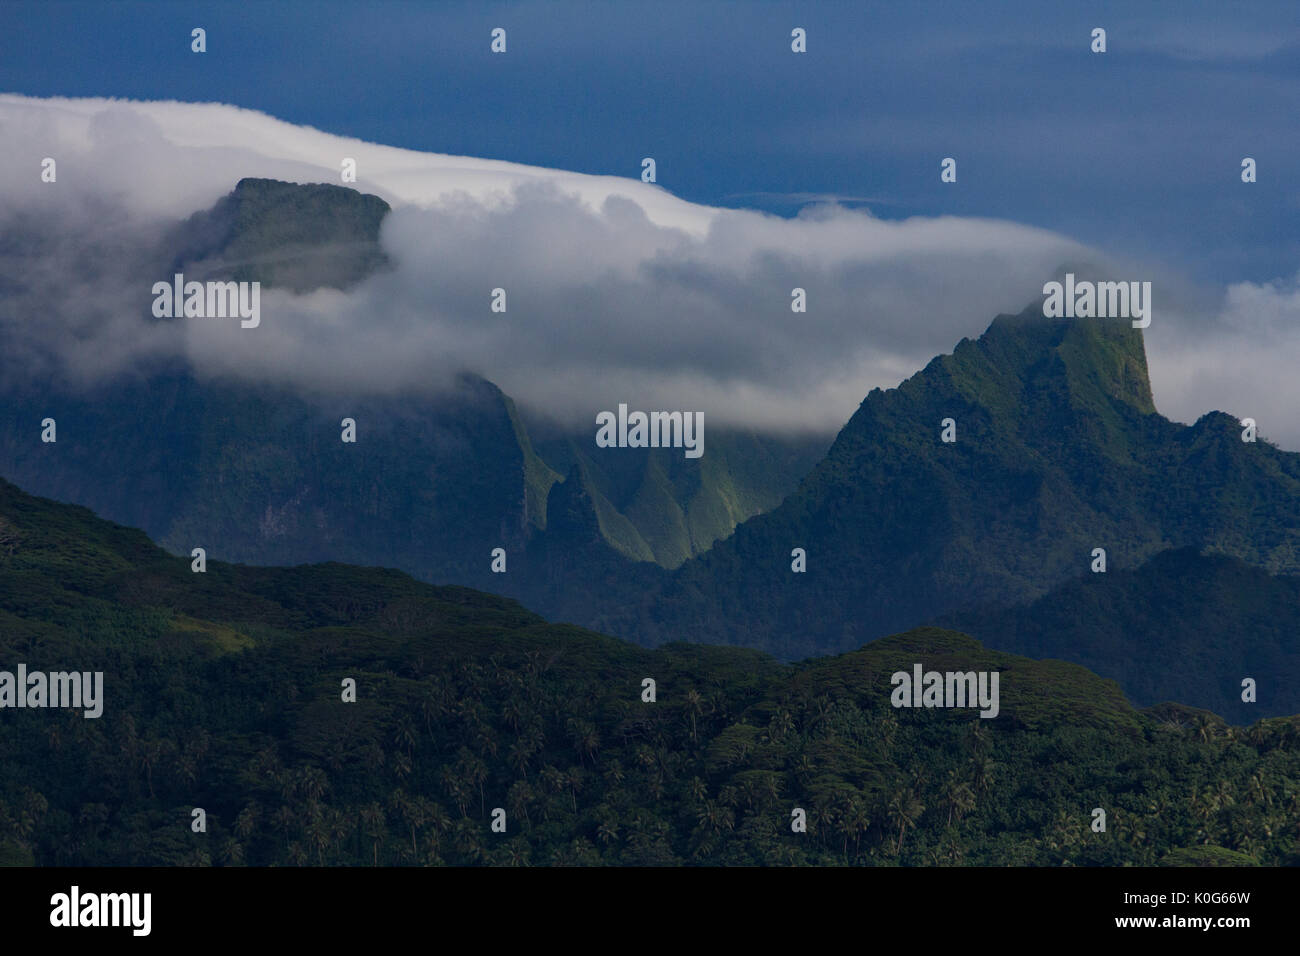 Stunning views of the mountains of Raiatea in French Polynesia Stock Photo